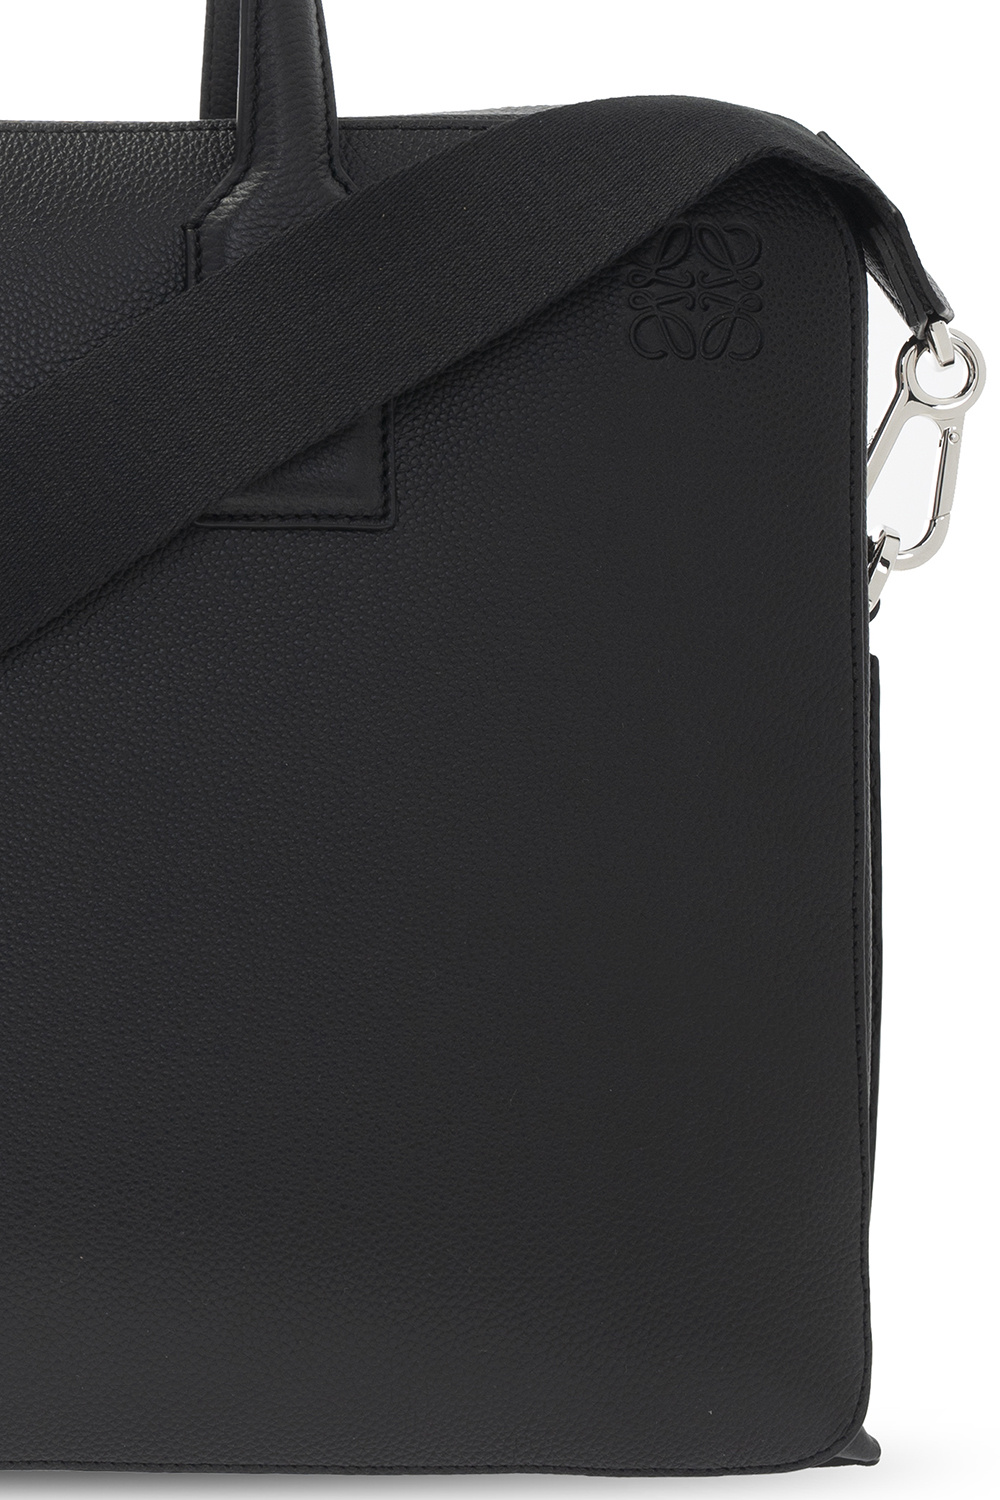 Loewe Goya Briefcase - Black Briefcases, Bags - LOW46738